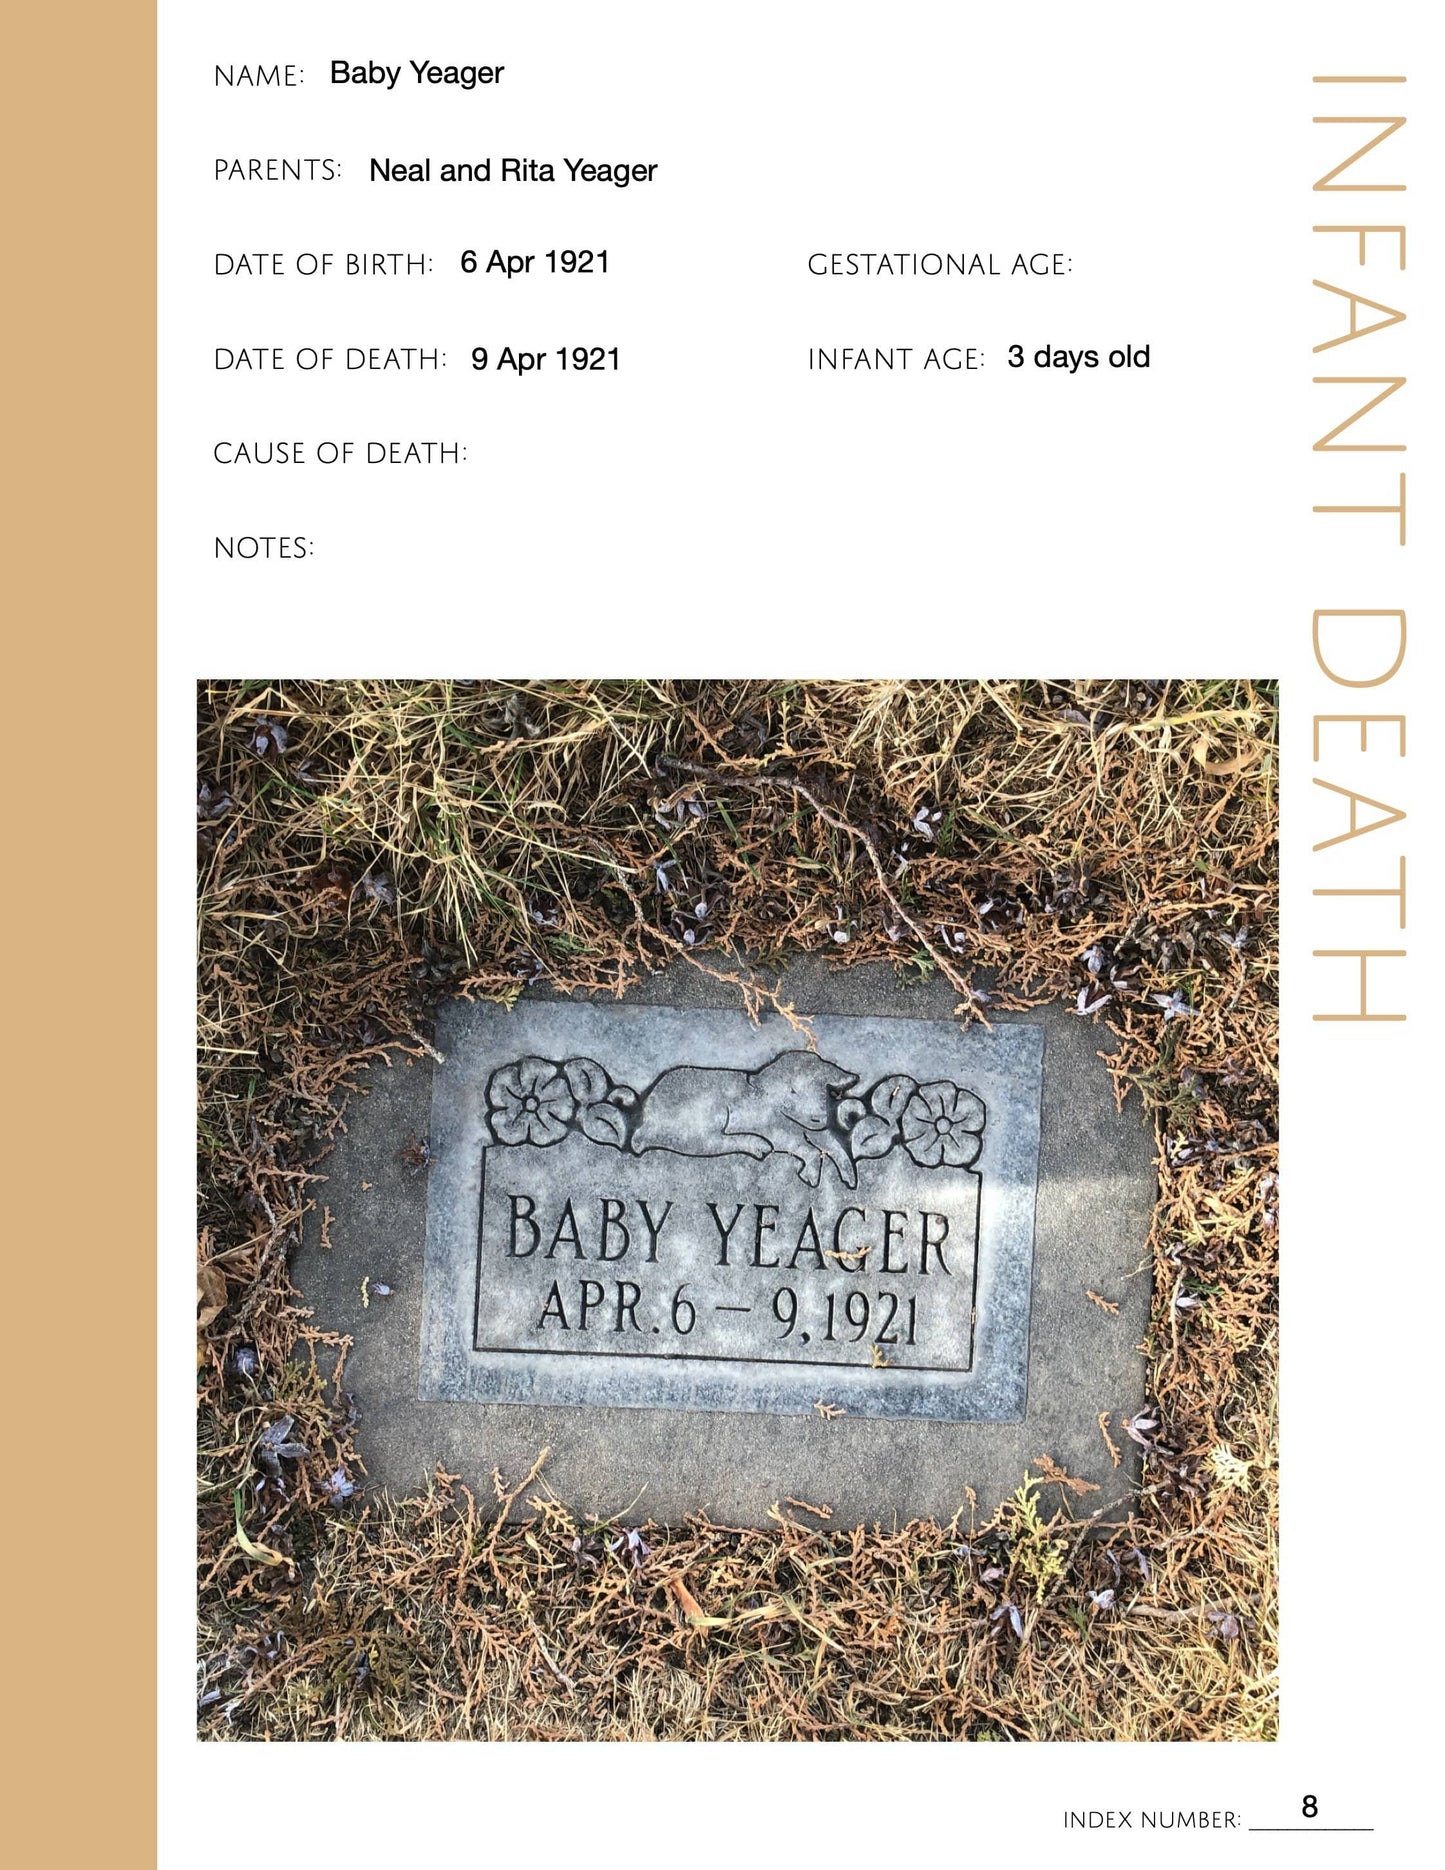 Infant Death Pages: Printable Genealogy Form (Digital Download)